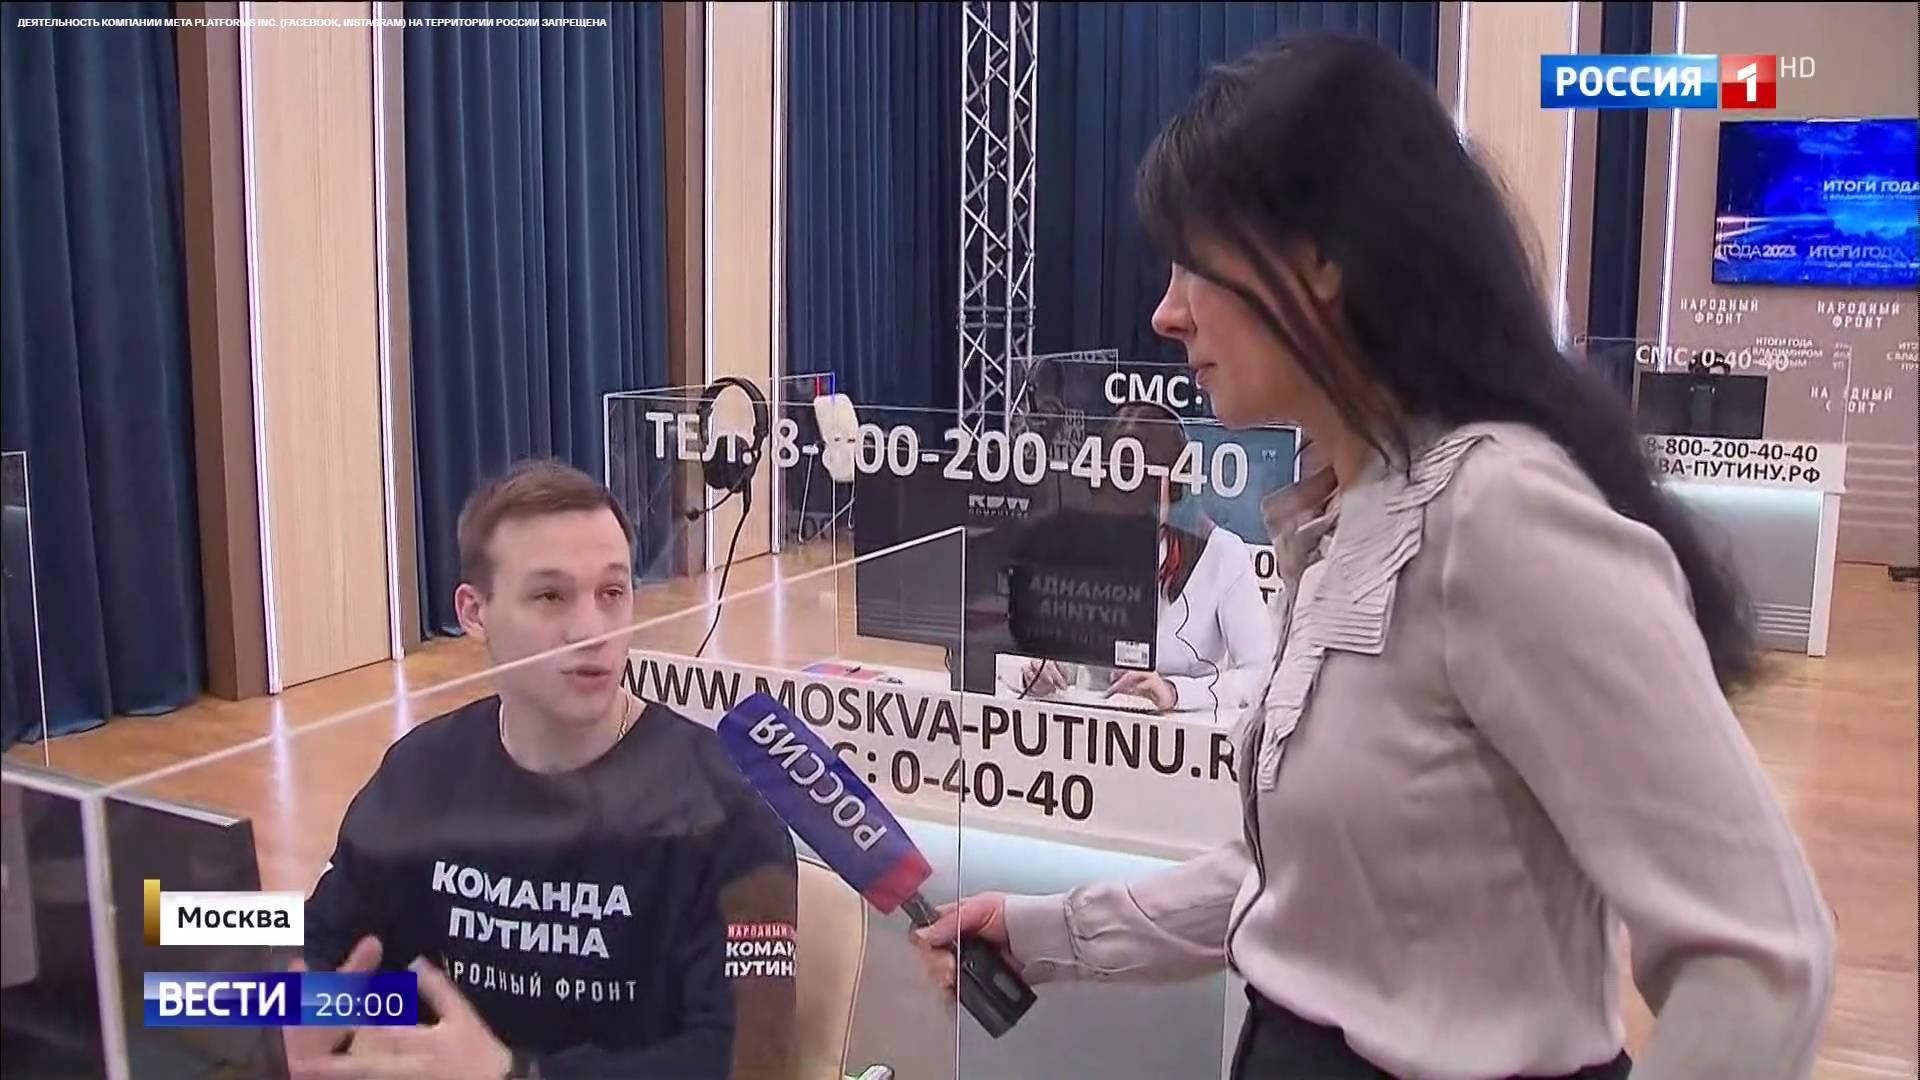 Kobieta z mikrofonem z napisem "Rossija" rozmawia z pracownikiem call center, który na koszulce ma rozysjki napus "Drużyna Putina"